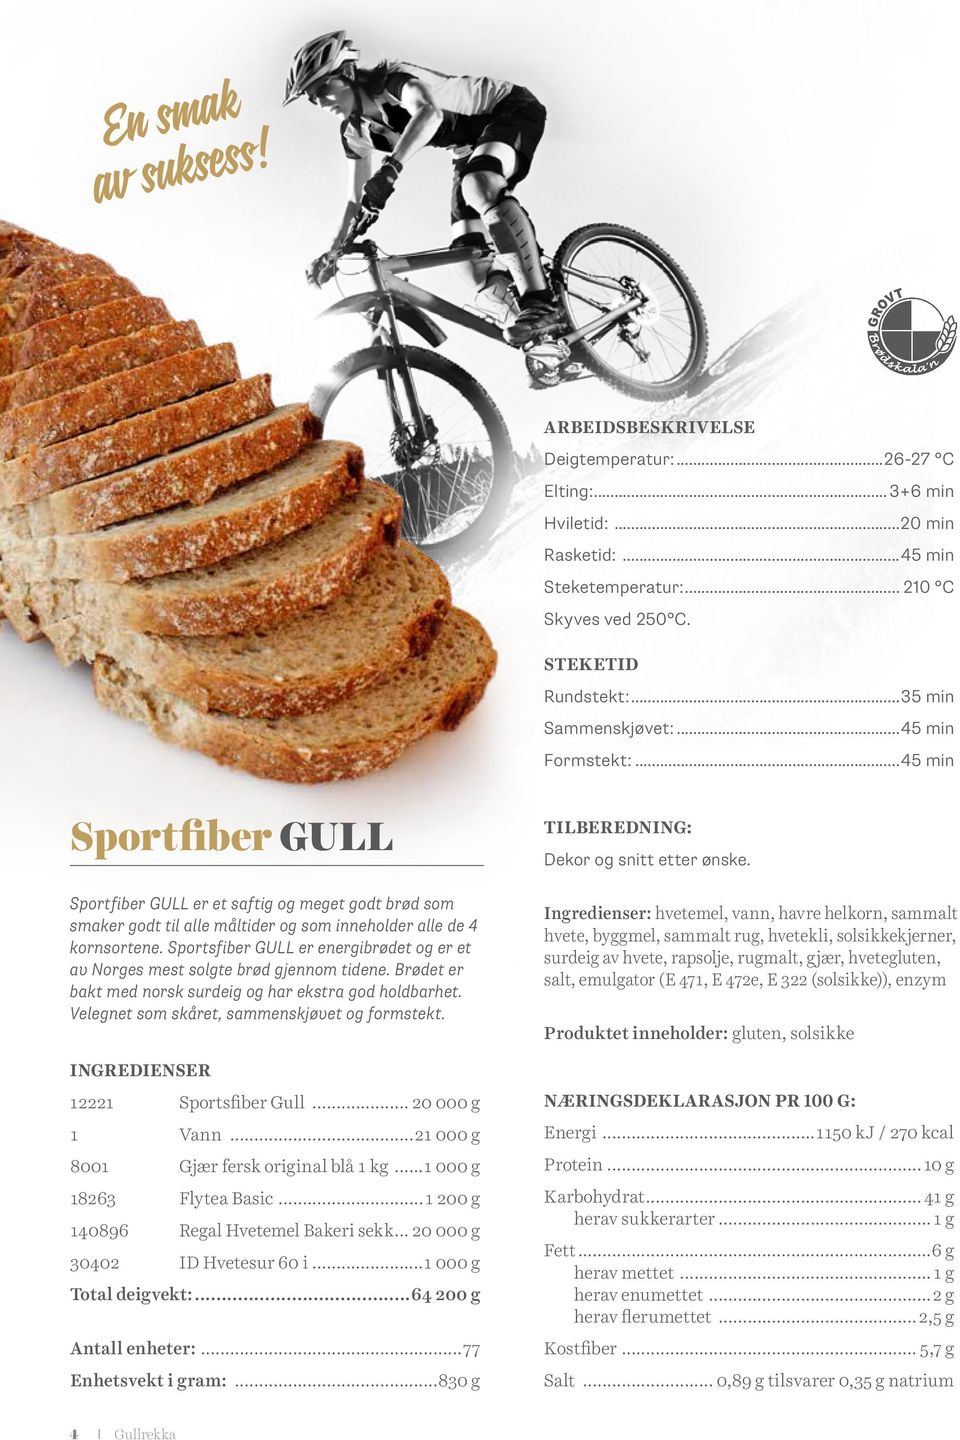 Sportsfiber GULL er energibrødet og er et av Norges mest solgte brød gjennom tidene. Brødet er bakt med norsk surdeig og har ekstra god holdbarhet. Velegnet som skåret, sammenskjøvet og formstekt.